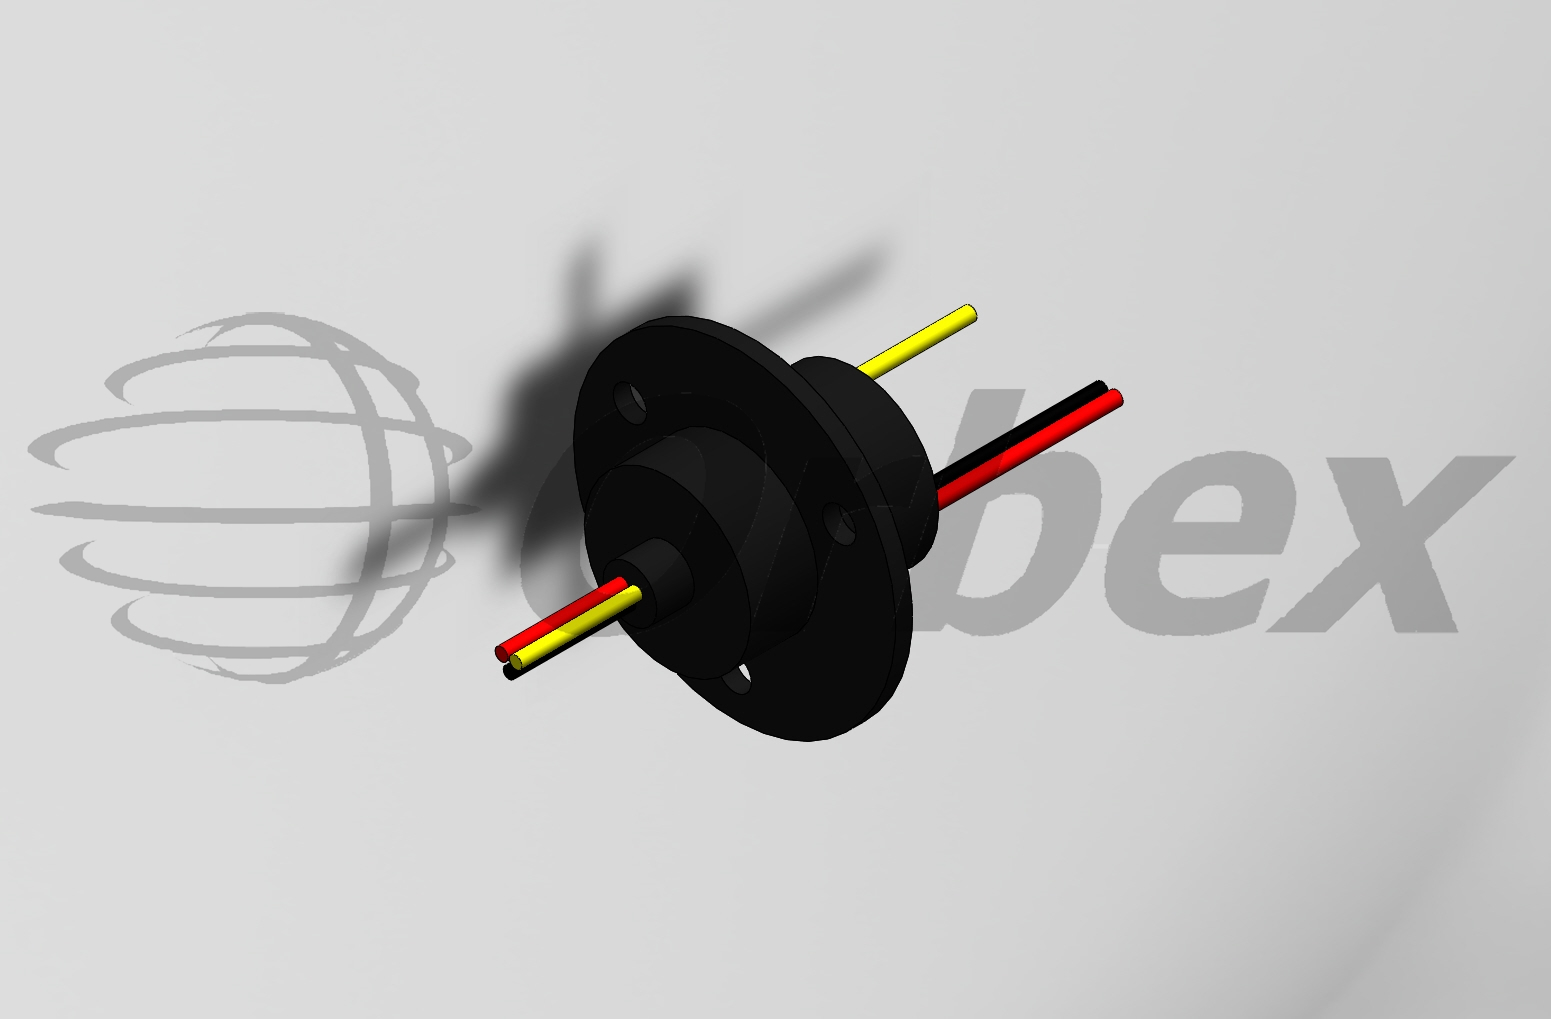 美国Orbex 集团 -312M1-0300 Miniature Slip Rings滑环-Orbex 300 系列非常适合需要在紧凑空间内传输信号和电力的应用。300 系列小转子直径可最大限度地减少相对表面速度，从而最大限度地减少不平衡和发热，从而延长使用寿命。